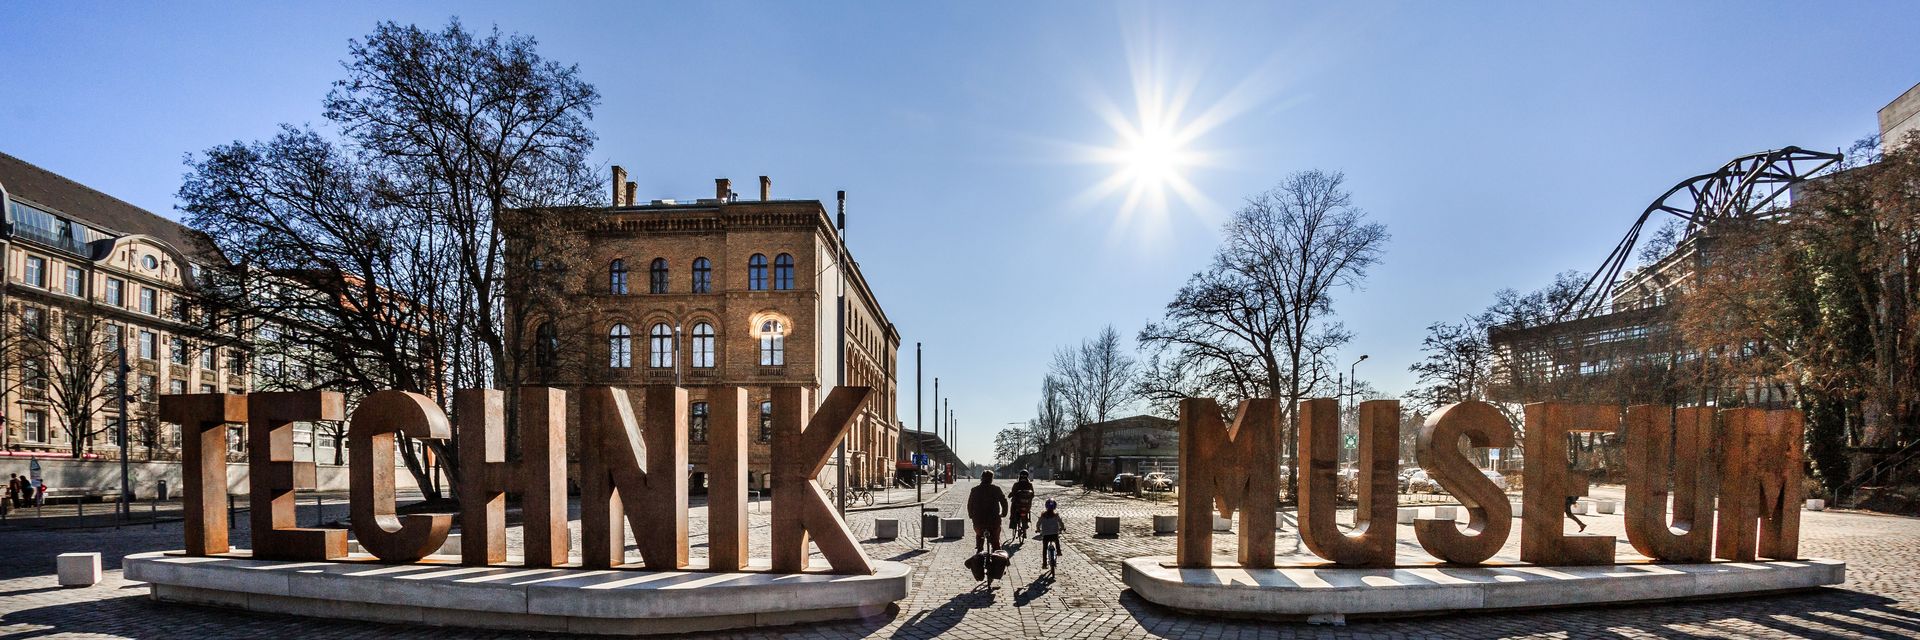 Auf einem gepflasterten Platz sieht man eine aus Metallbuchstaben erstellte Wortskulptur, die sich „Technik Museum“ liest. Im Hintergrund ein Backsteingebäude.